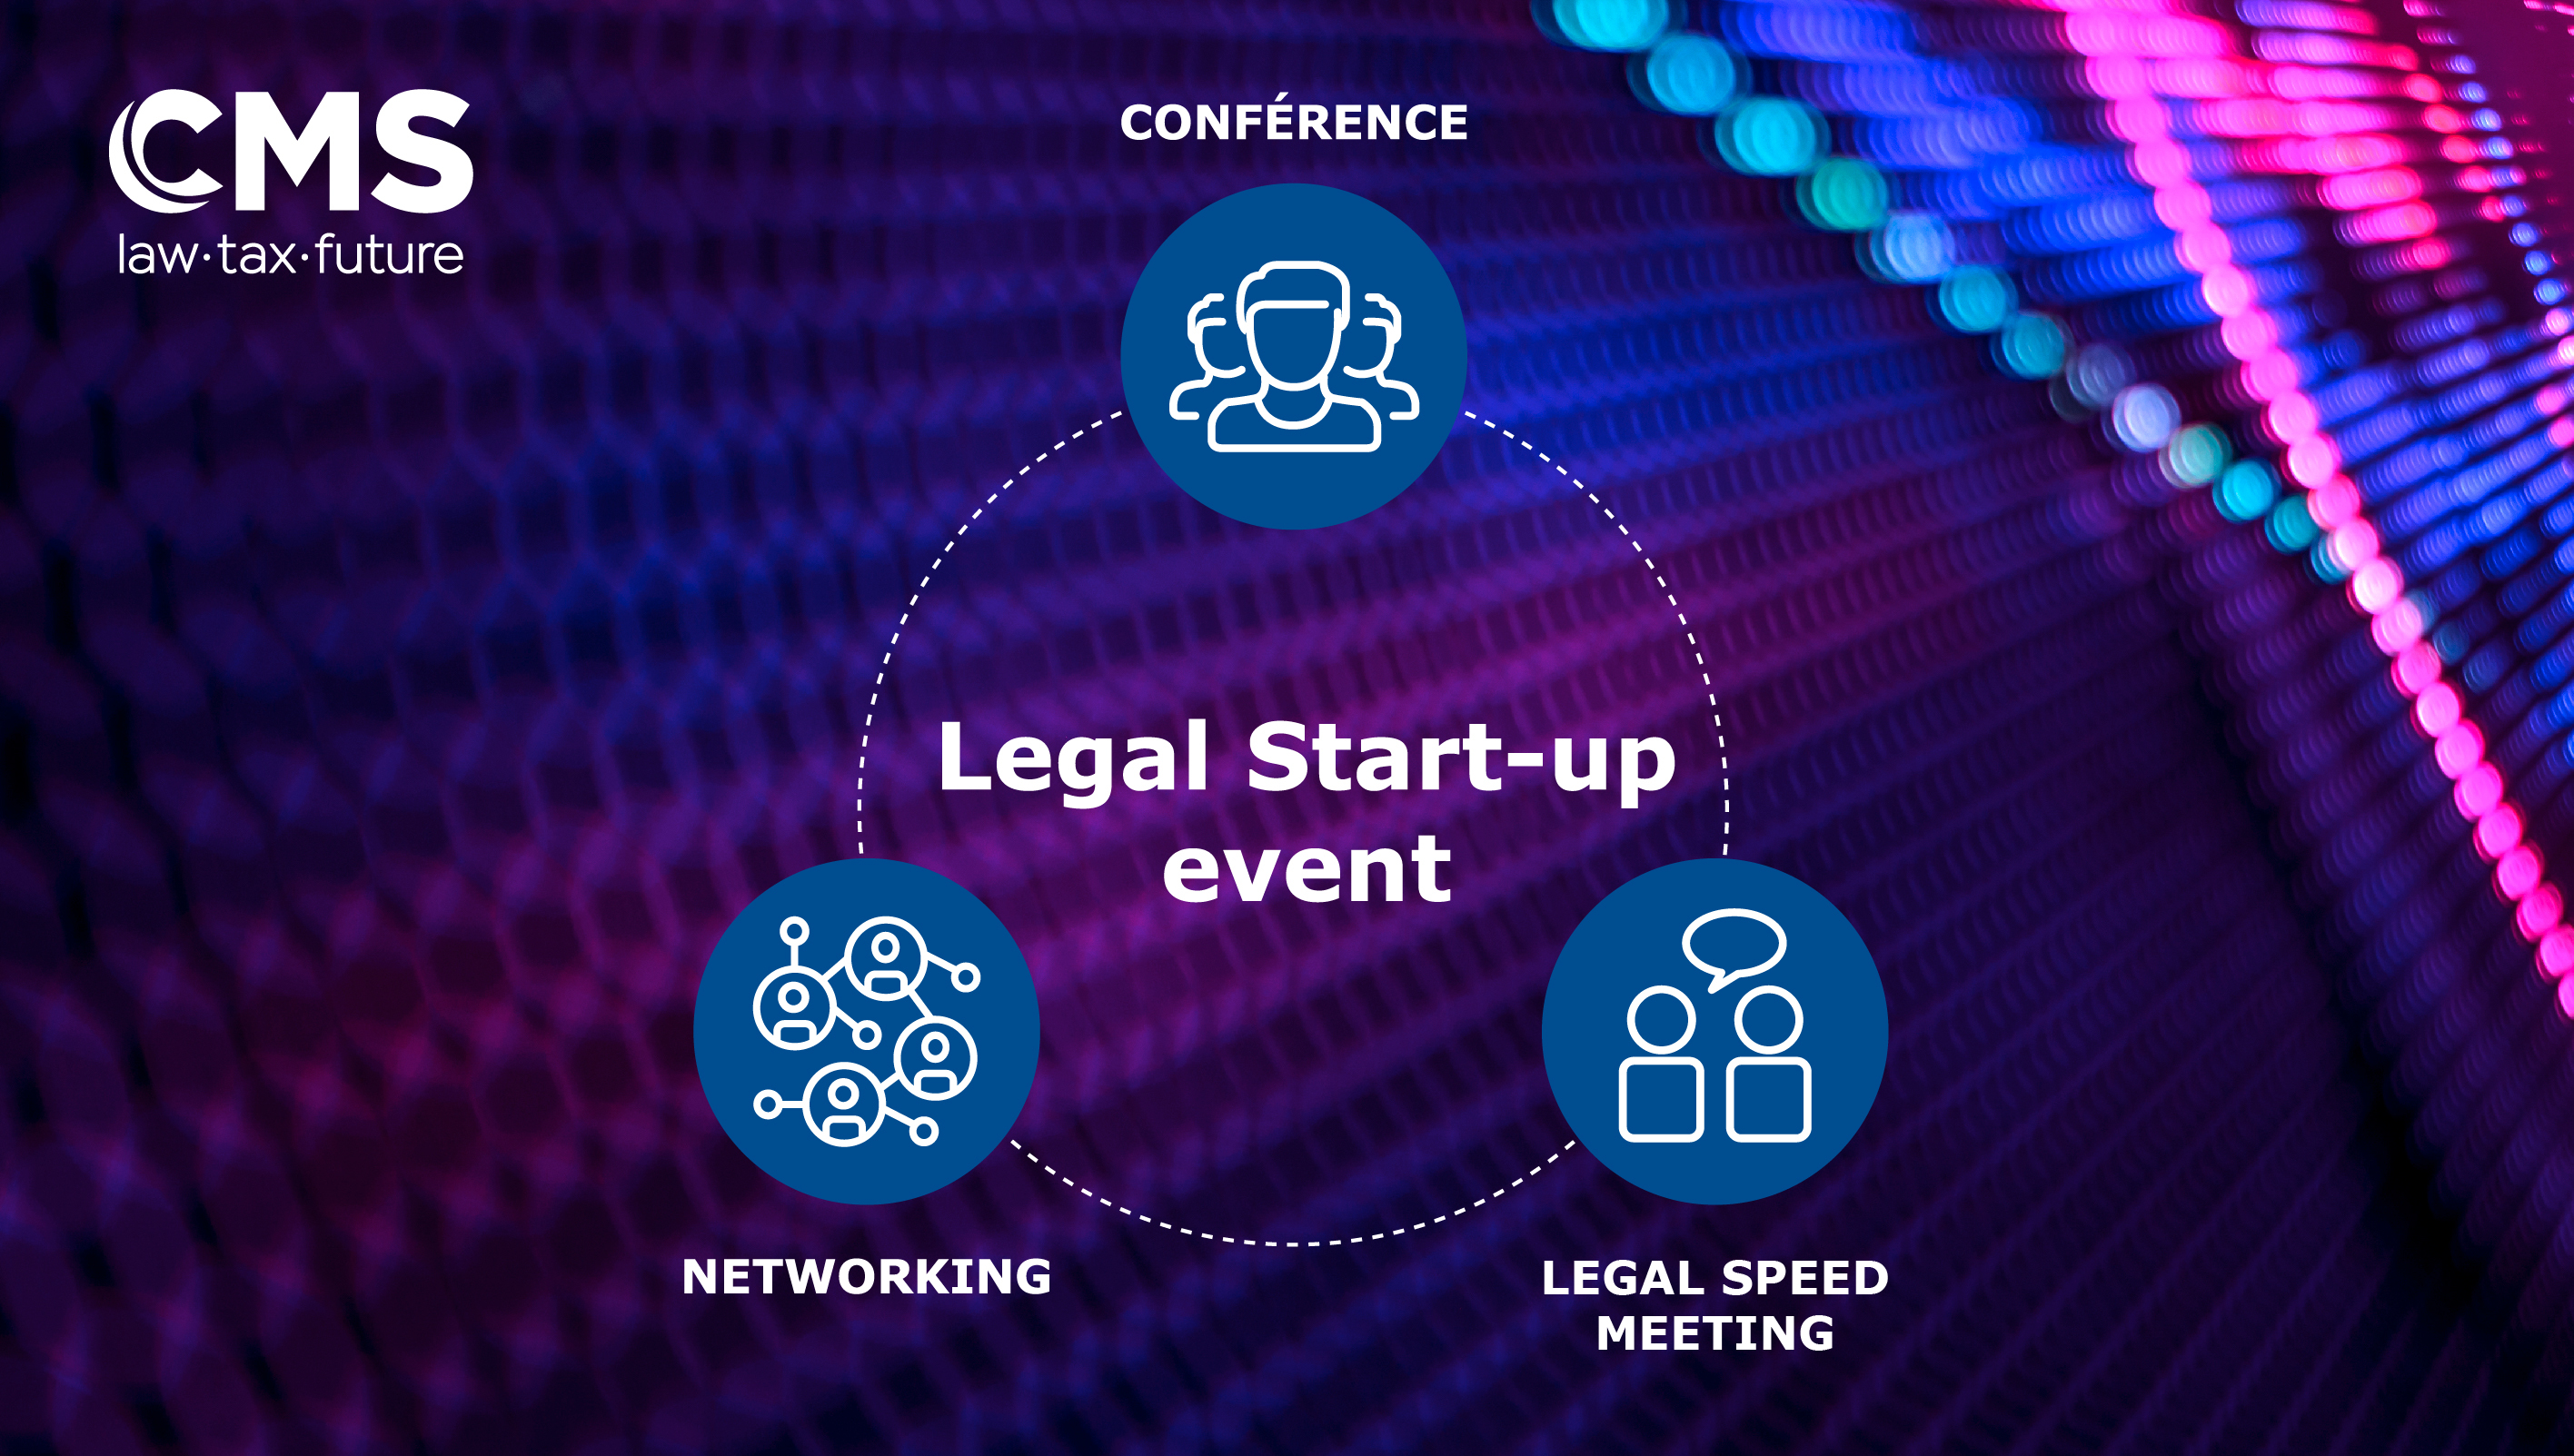 CMS: Legal Start-up event